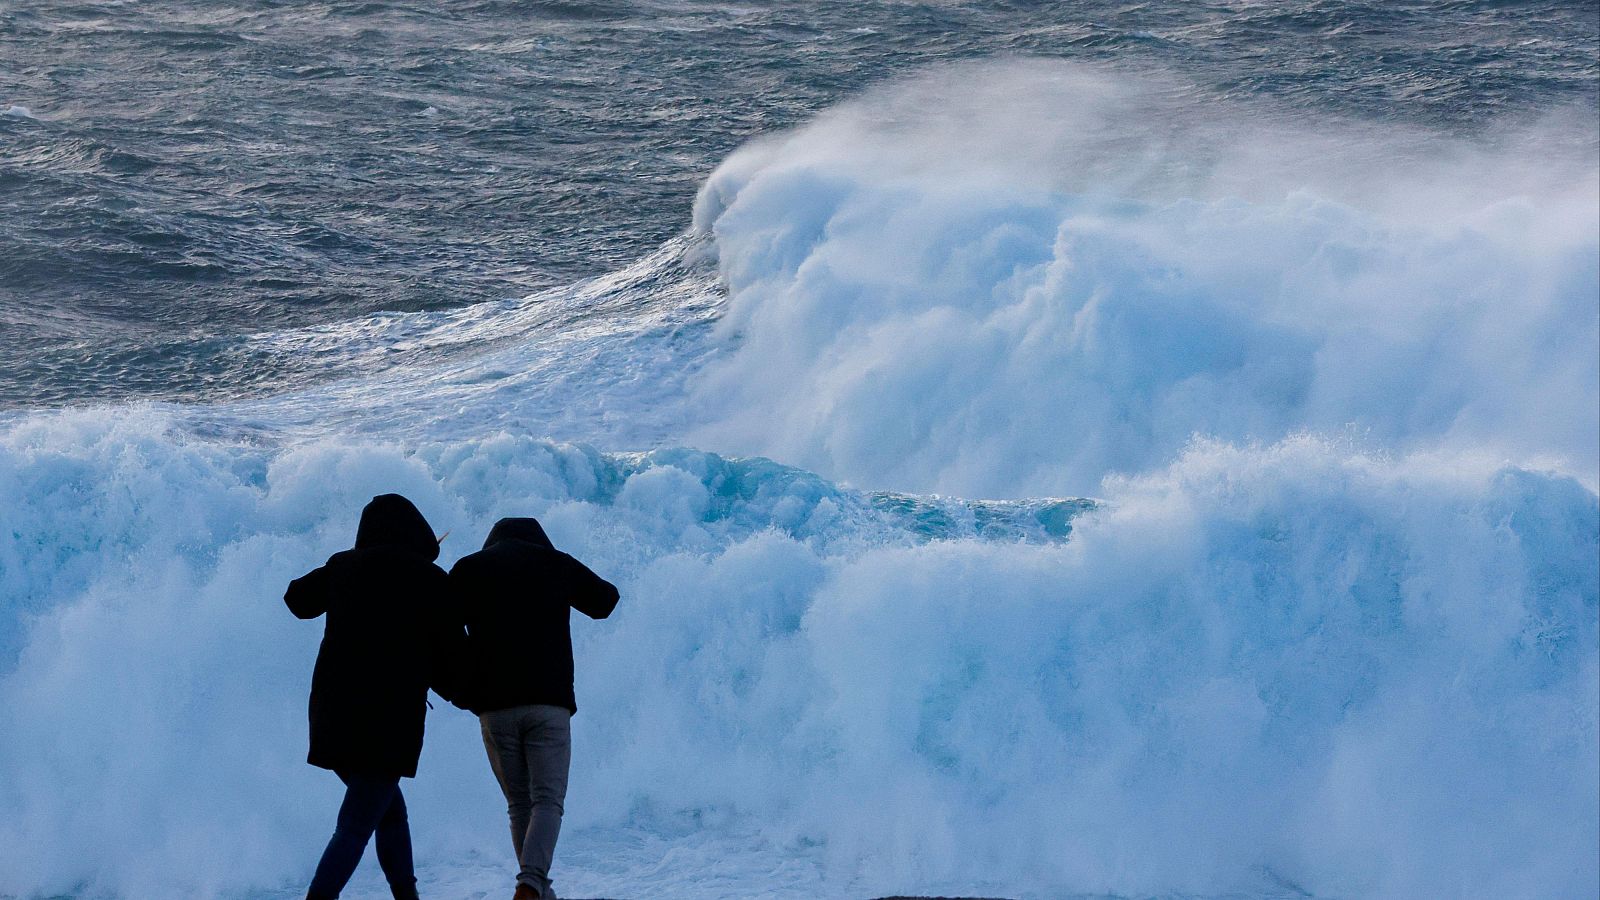 Los efectos de la borrasca Nelson se sienten en media España: viento, lluvia, fenómenos costeros y nieve